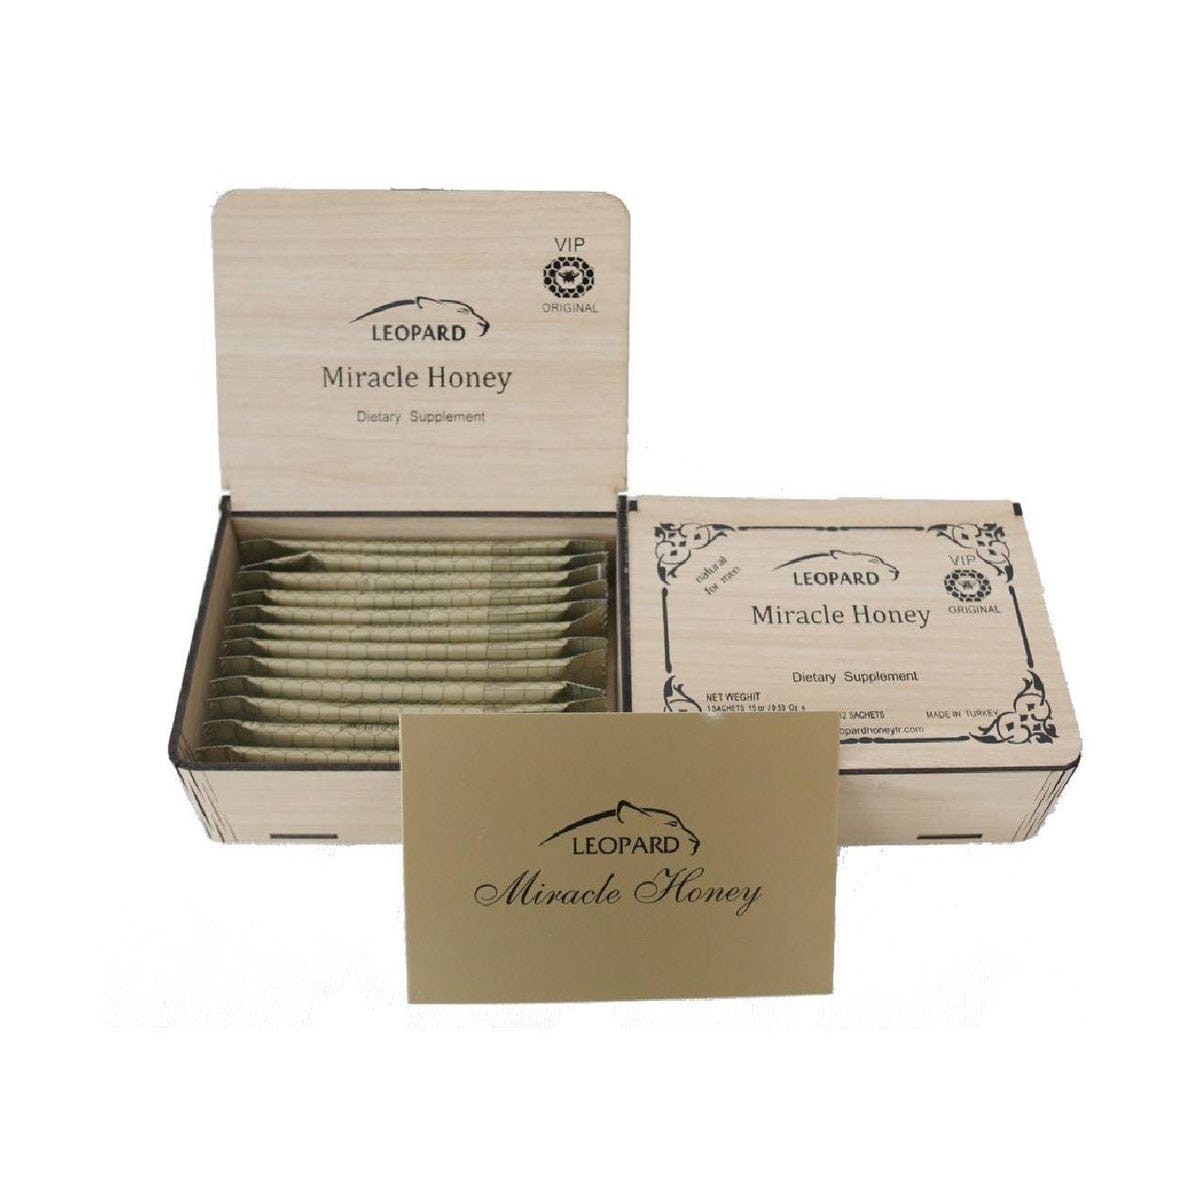 Royal Honey Plus Vip (Boîte de 12 sachets)